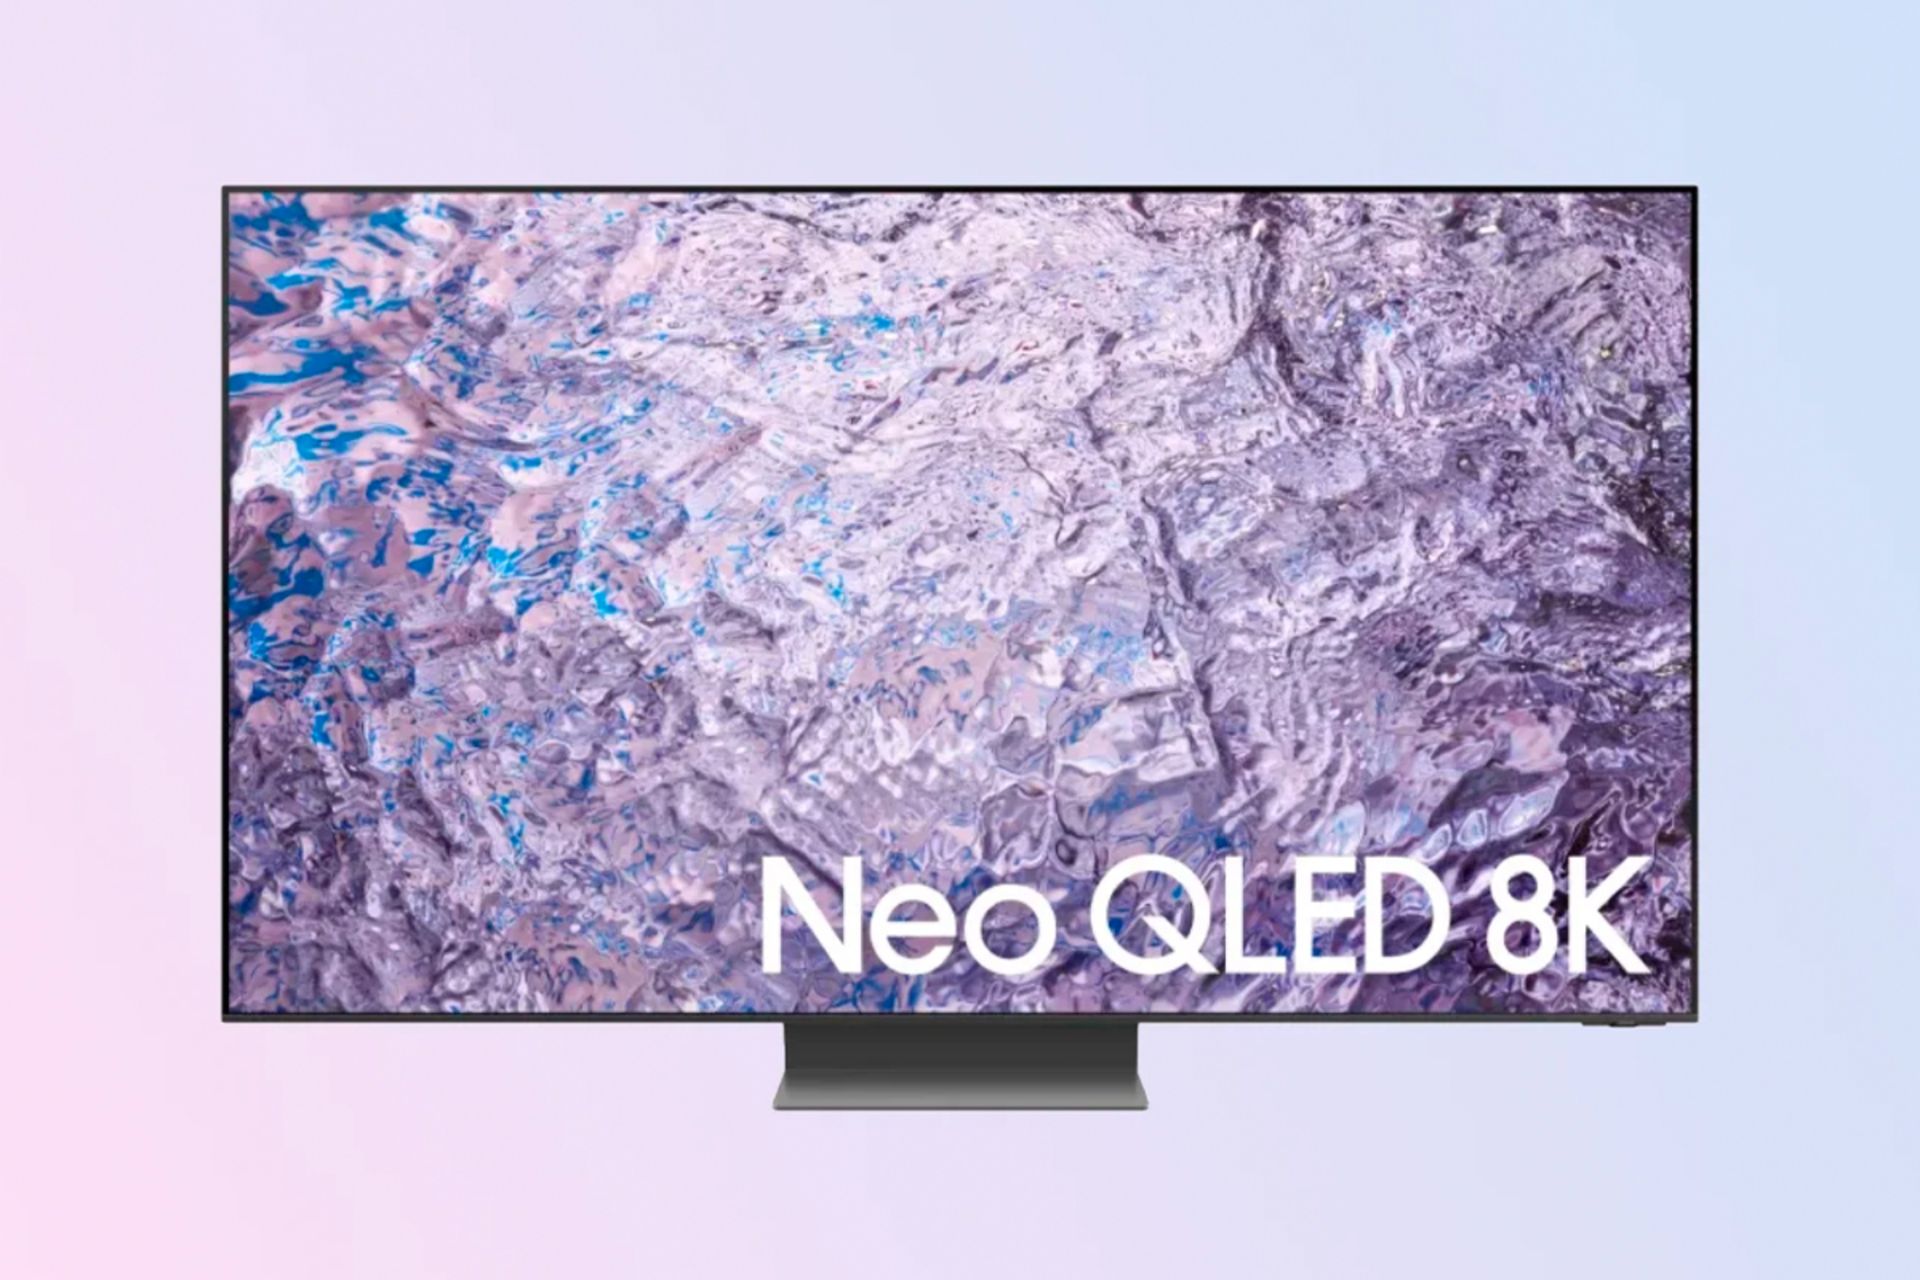 تلویزیون نئو کیولد ۲۰۲۳ سامسونگ Samsung Neo QLED 2023 از نمای جلو